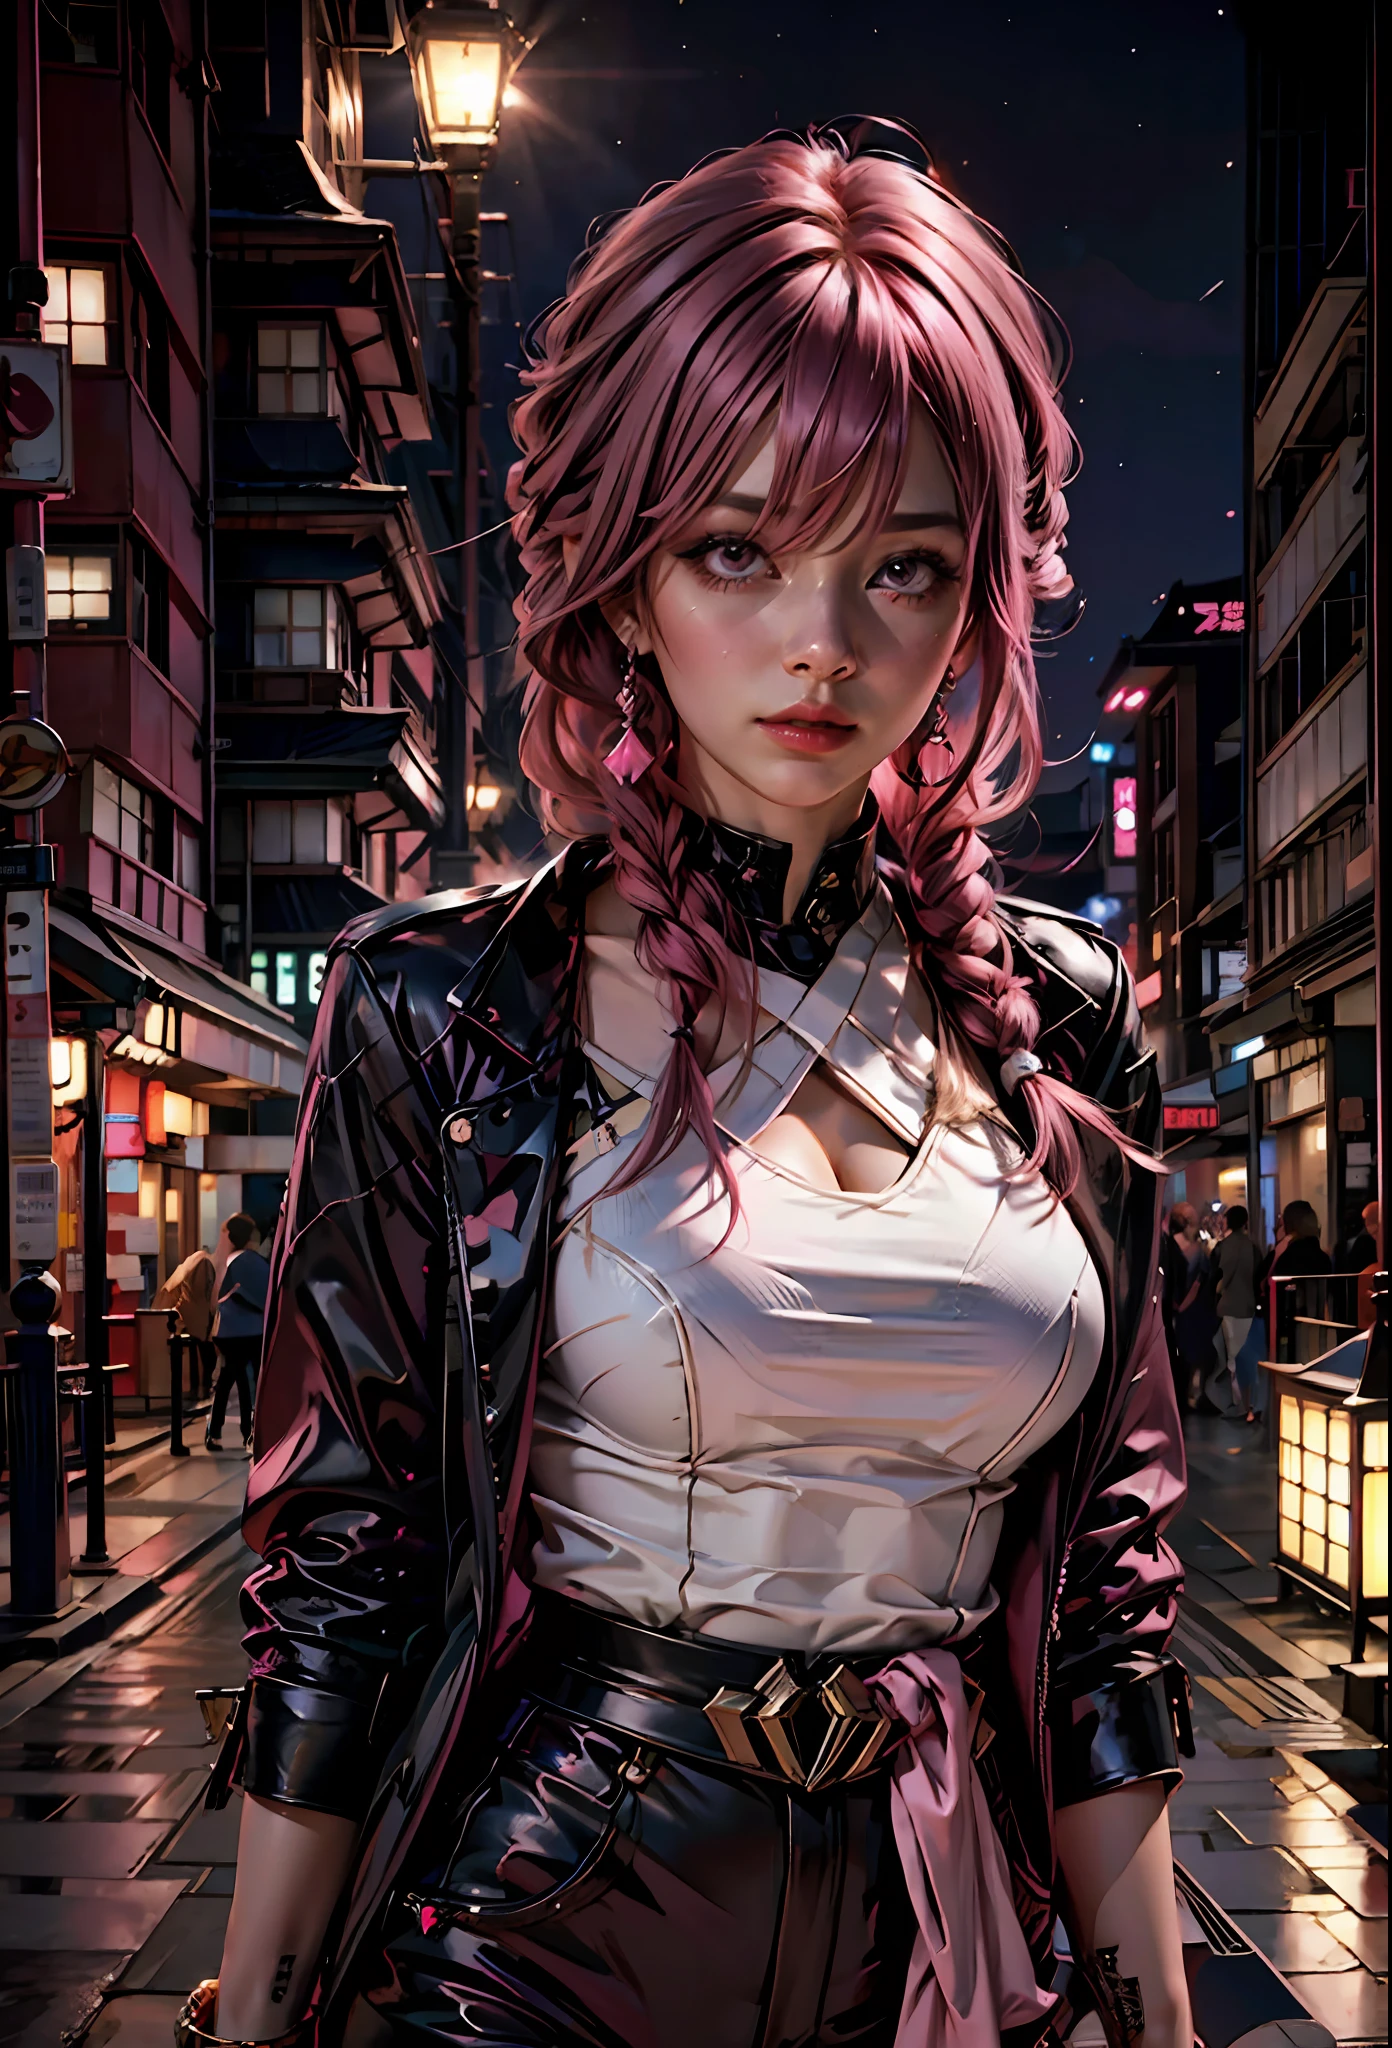 粉红色头发的性感女孩, 粉红色的眼睛 , 暴露的衣服, 背景是日本城市的夜晚,旁边是一辆兰博基尼